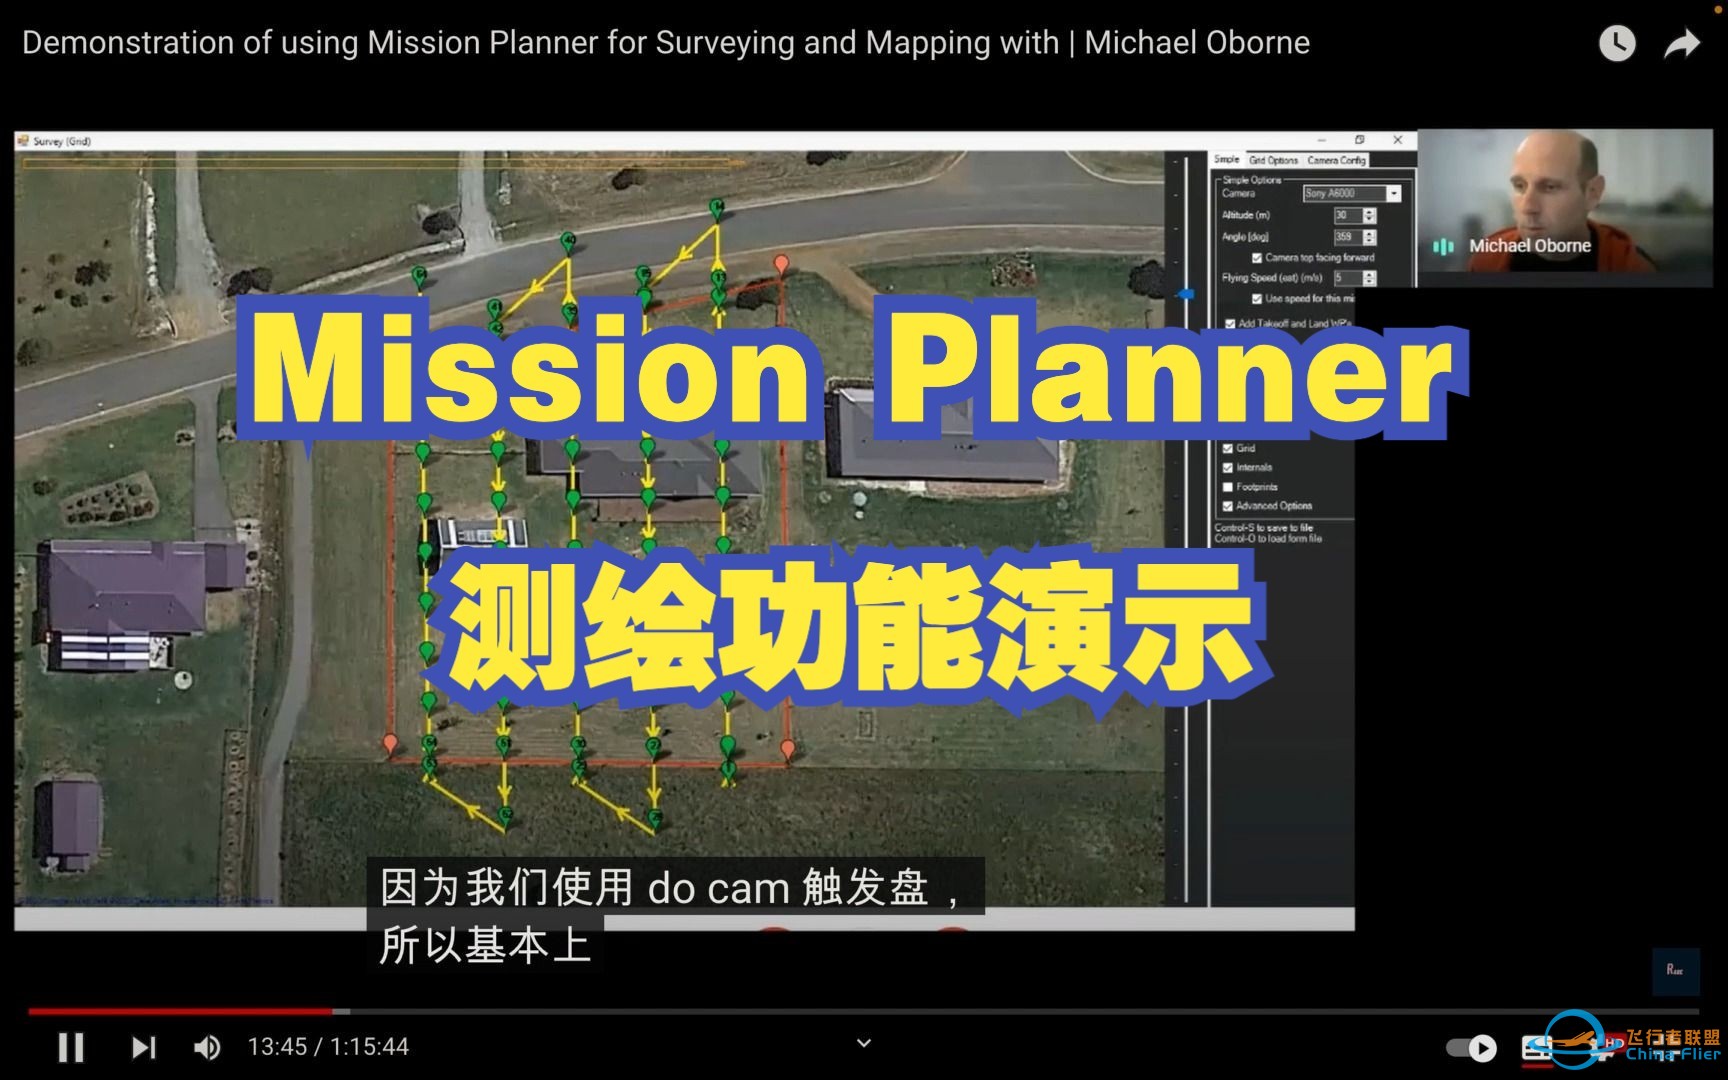 【教程】Mission Planner 测绘功能演示 | Michael Oborne-1.jpg